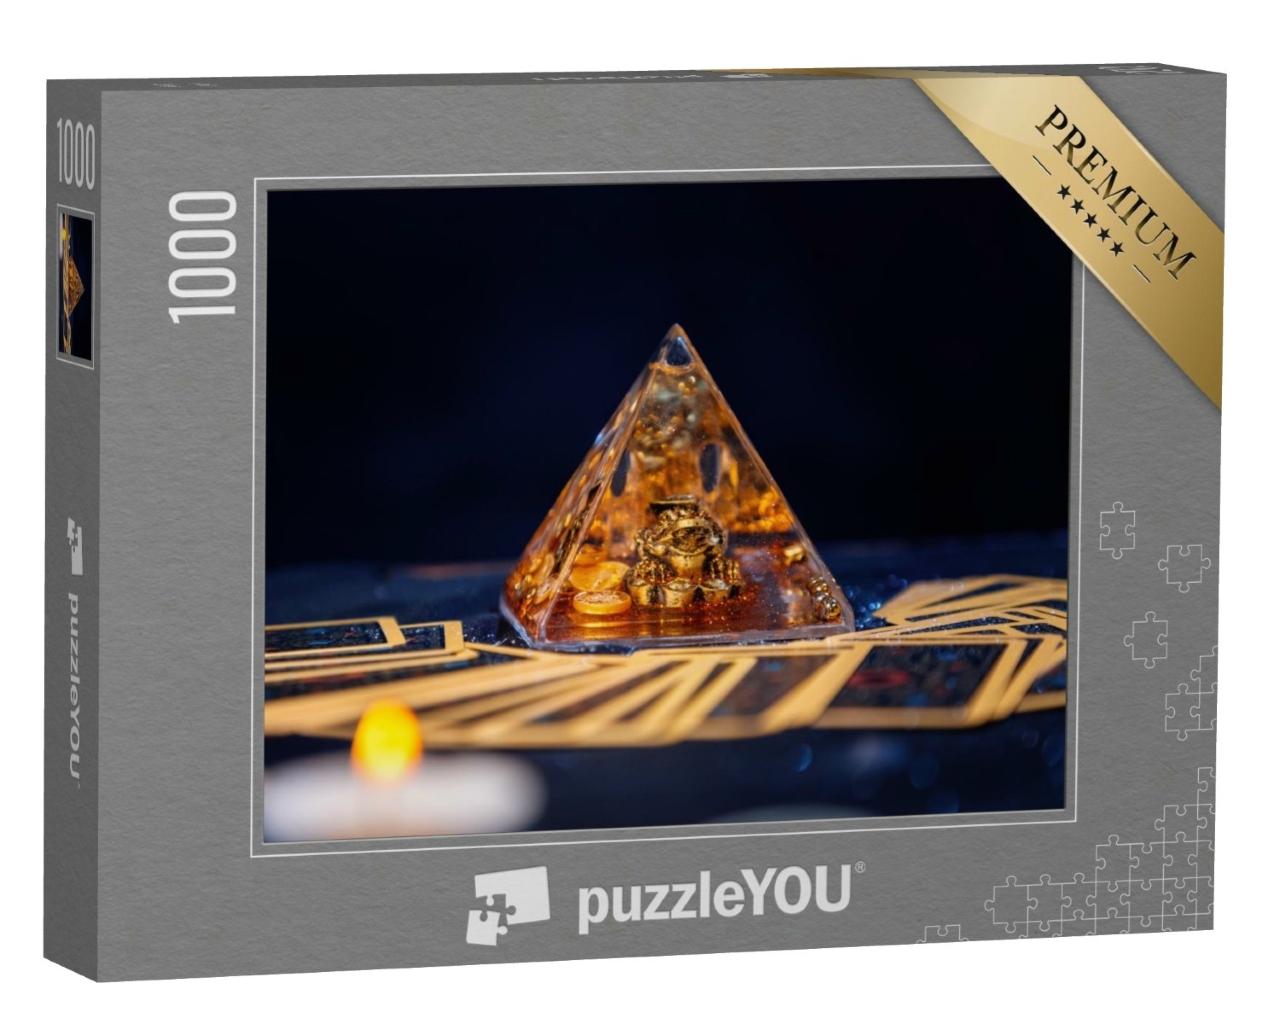 Puzzle de 1000 pièces « Pyramide de verre avec une grenouille dorée »